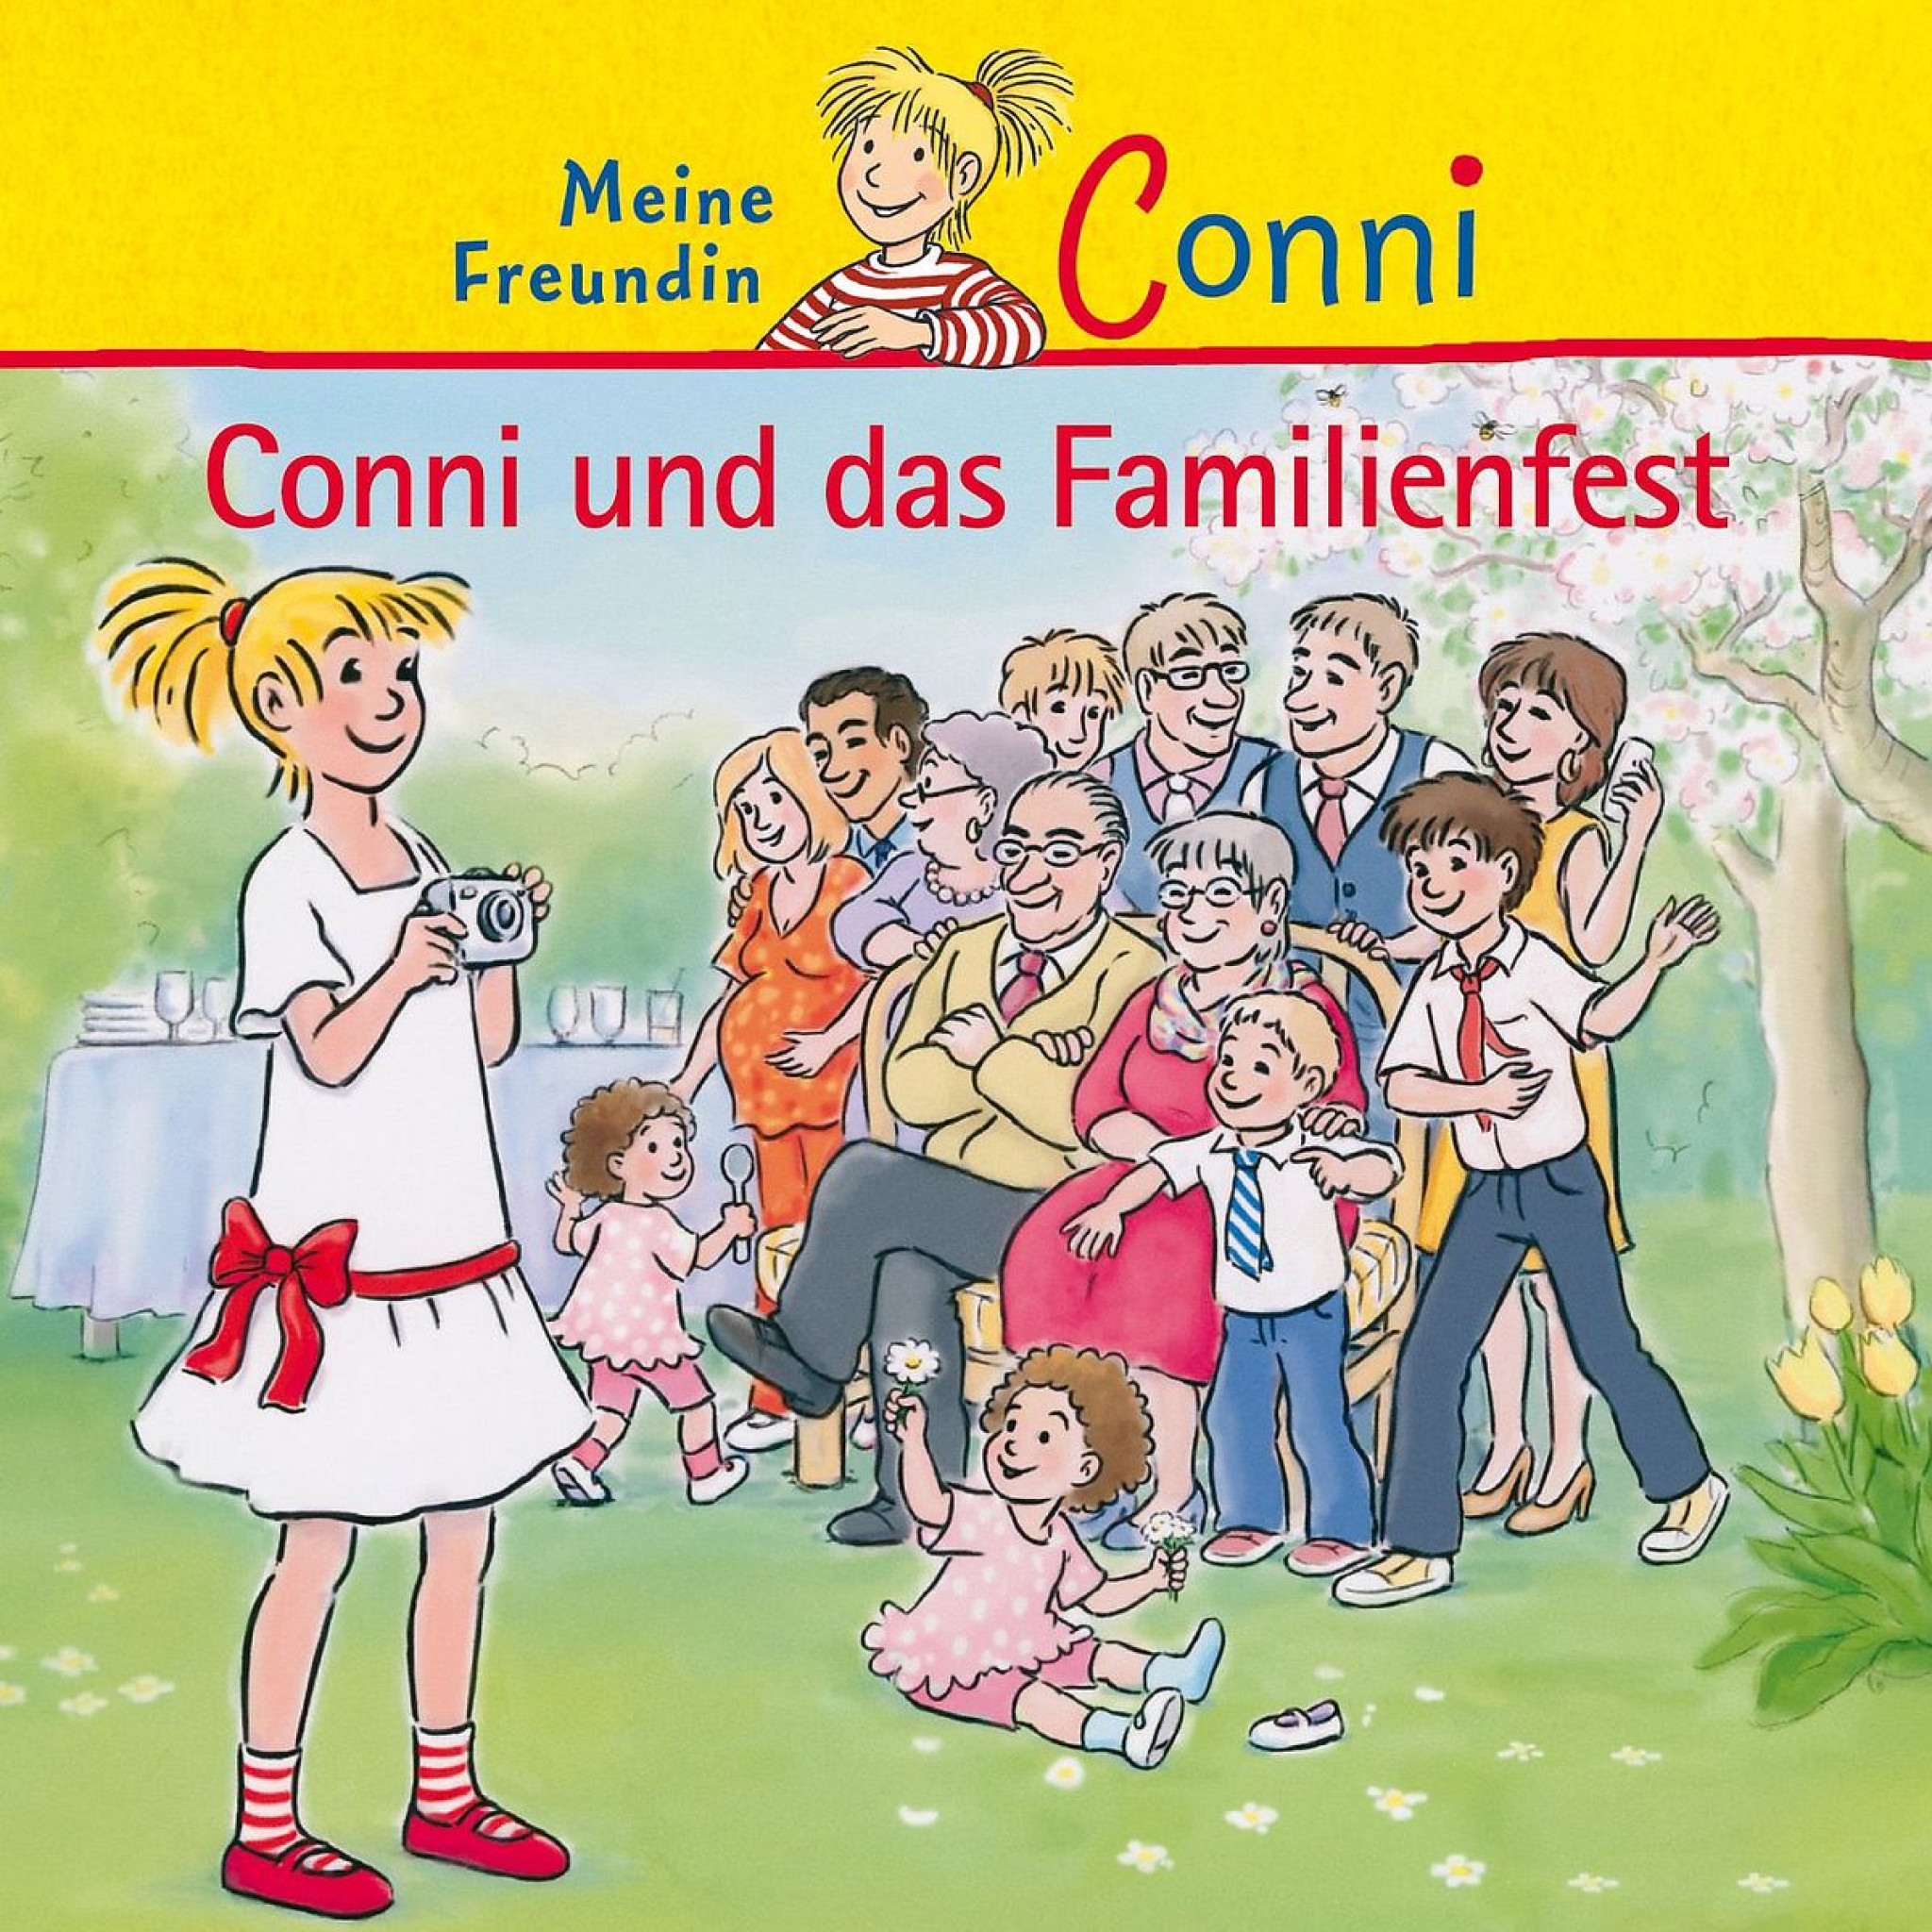 Conni und das Familienfest